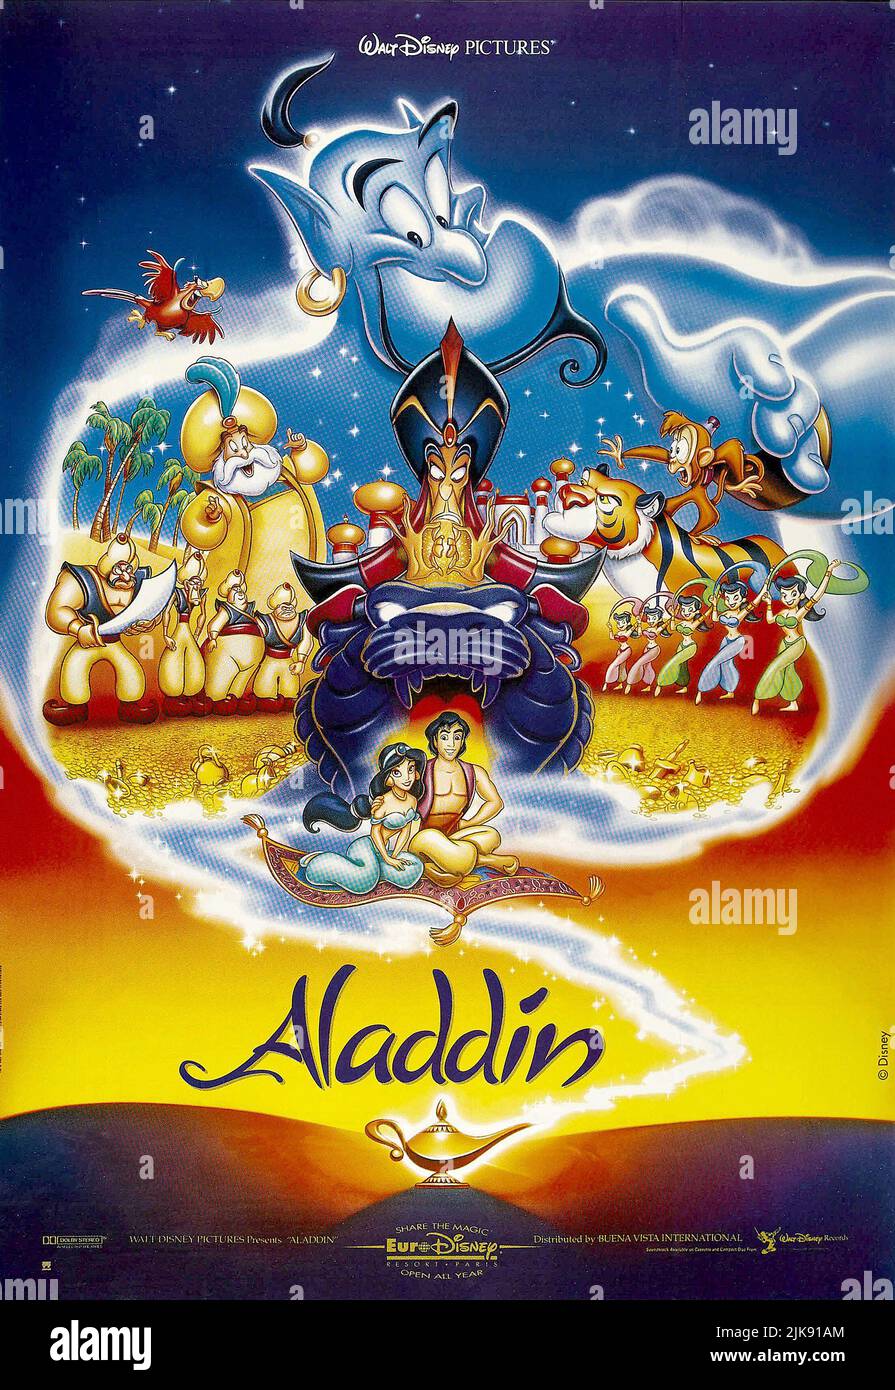 Iago, la Genie, il Sultano, Jafar, Rajah, Abu, Princess Jasmine & Aladdin  Film Poster Film: Aladdin (USA 1992) regista: Ron Clements & John Musker 08  novembre 1992 **AVVISO** questa fotografia è solo